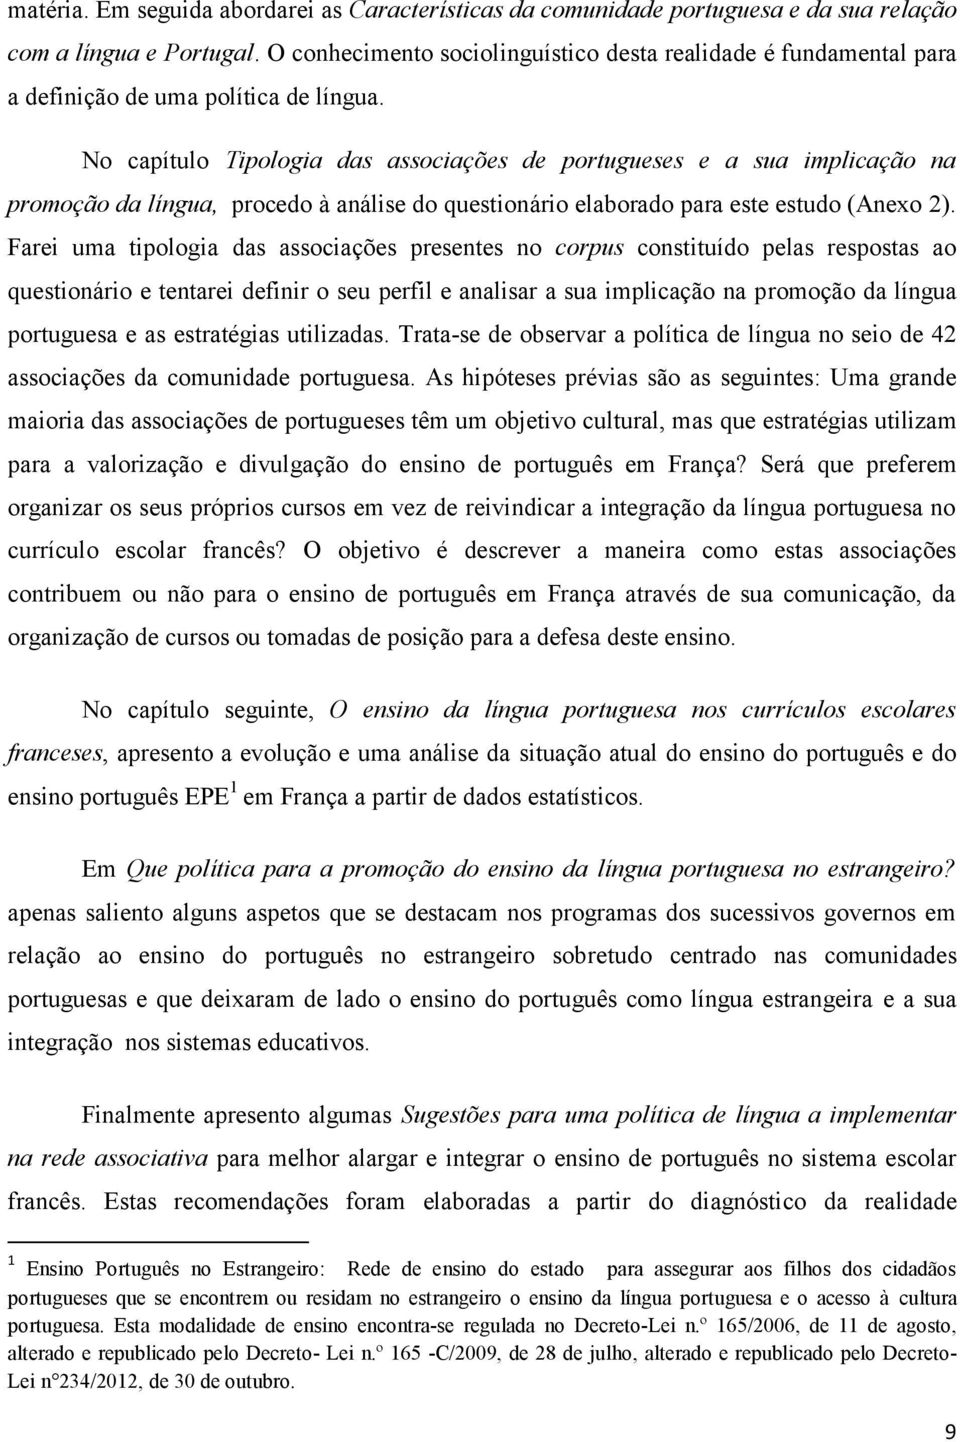 No capítulo Tipologia das associações de portugueses e a sua implicação na promoção da língua, procedo à análise do questionário elaborado para este estudo (Anexo 2).